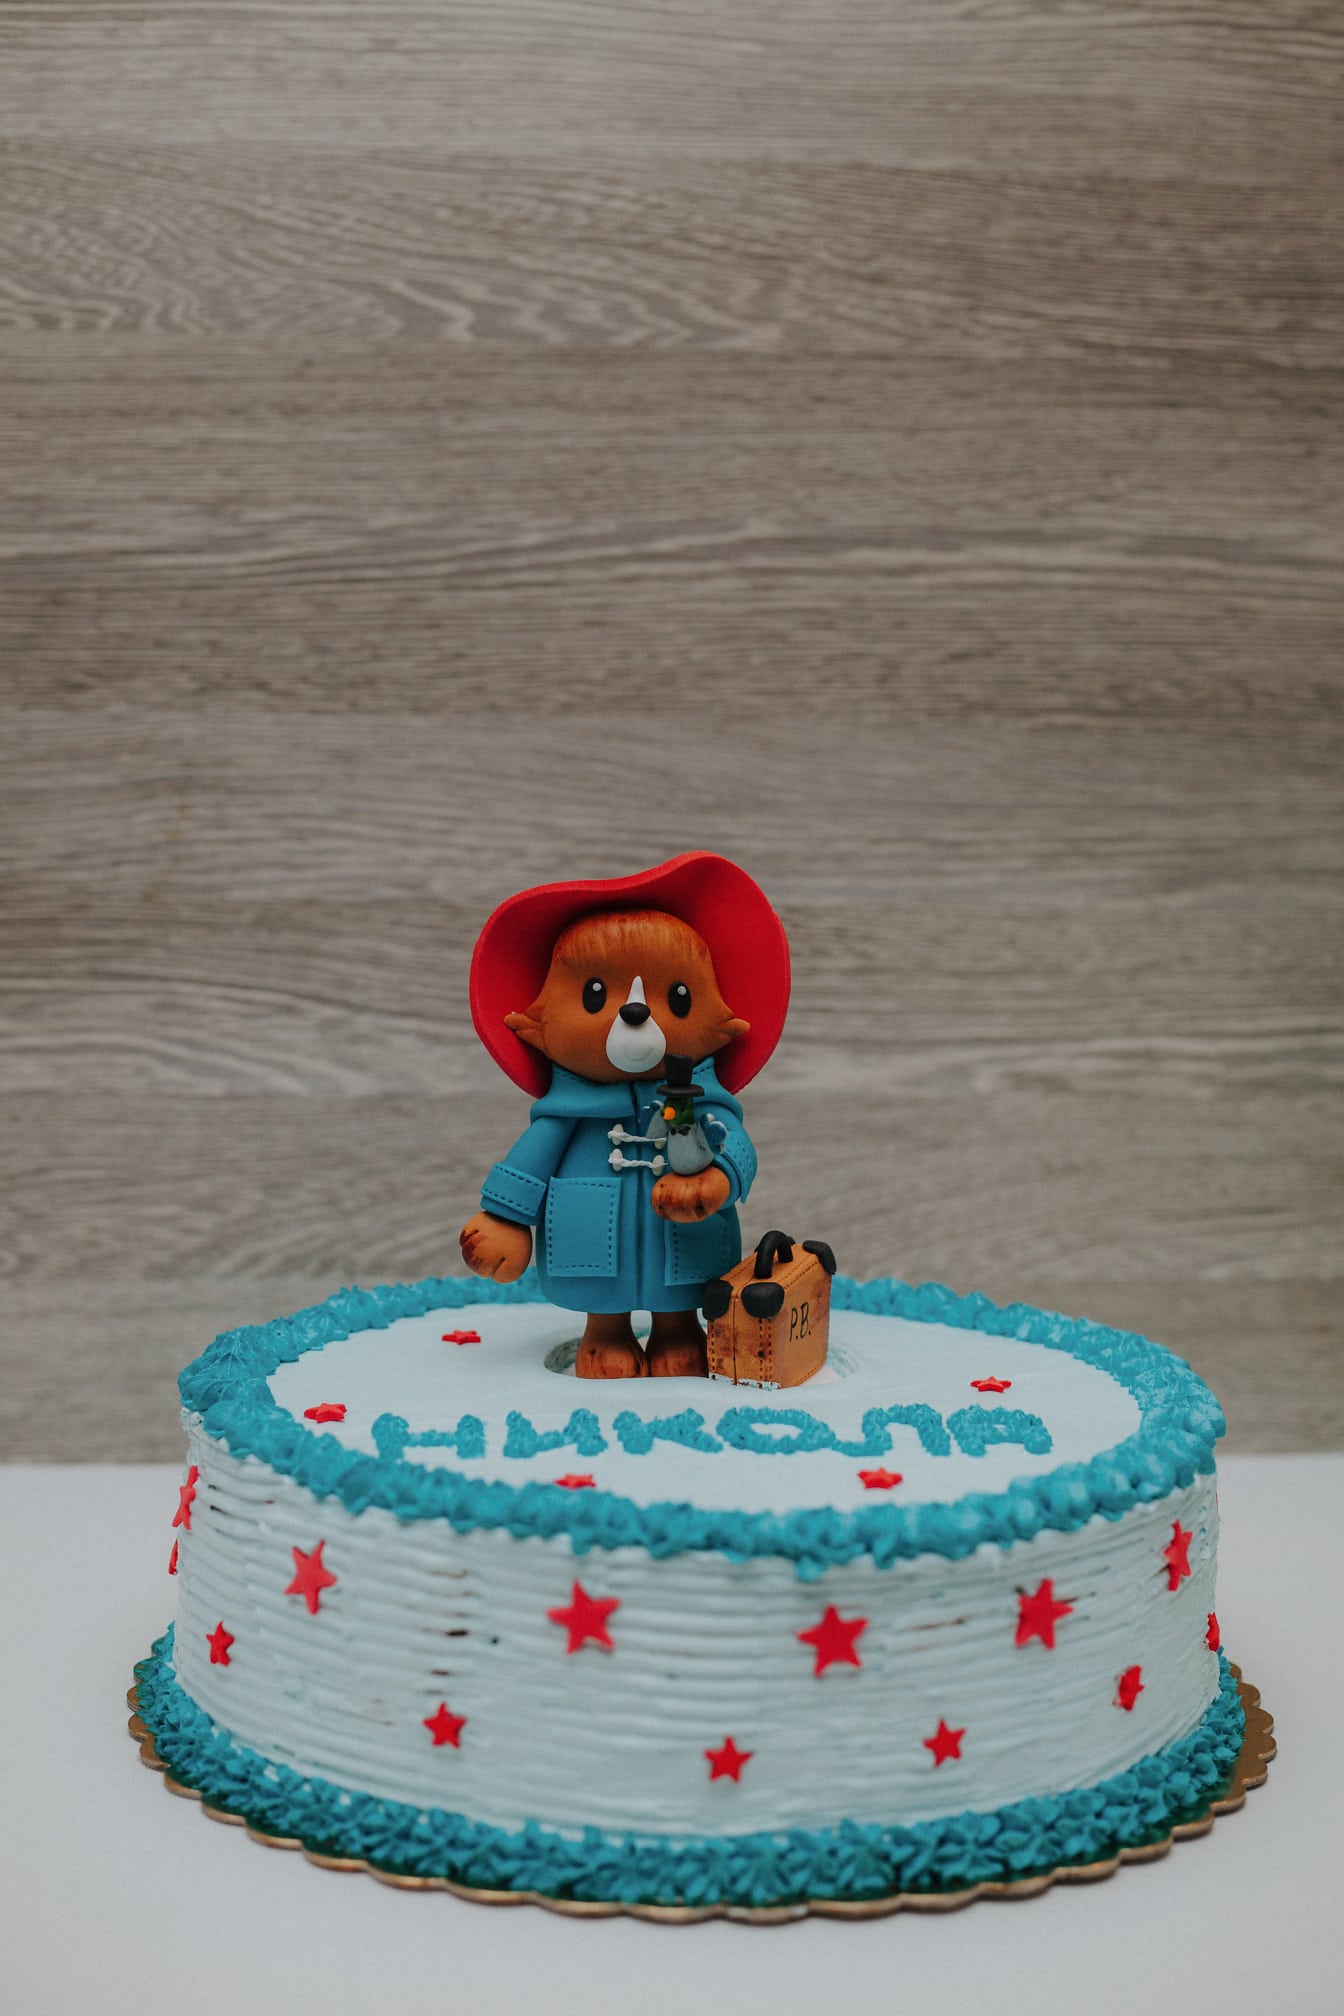 Kue ulang tahun dengan mainan beruang paddington